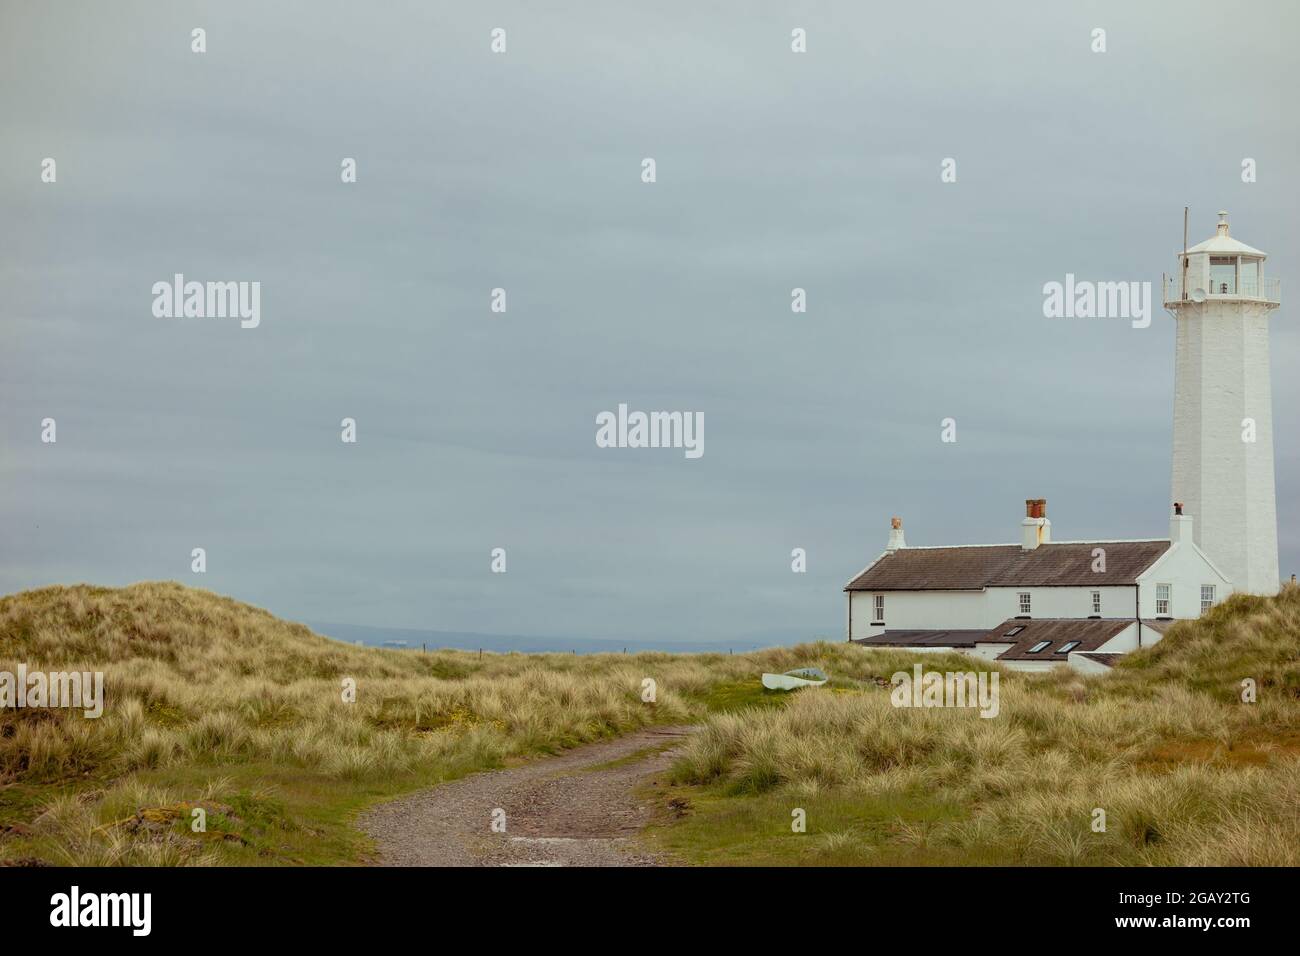 Paysage de Walney Island avec le lighhouse, chalet, prairie sauvage de dunes et espace blanc Banque D'Images